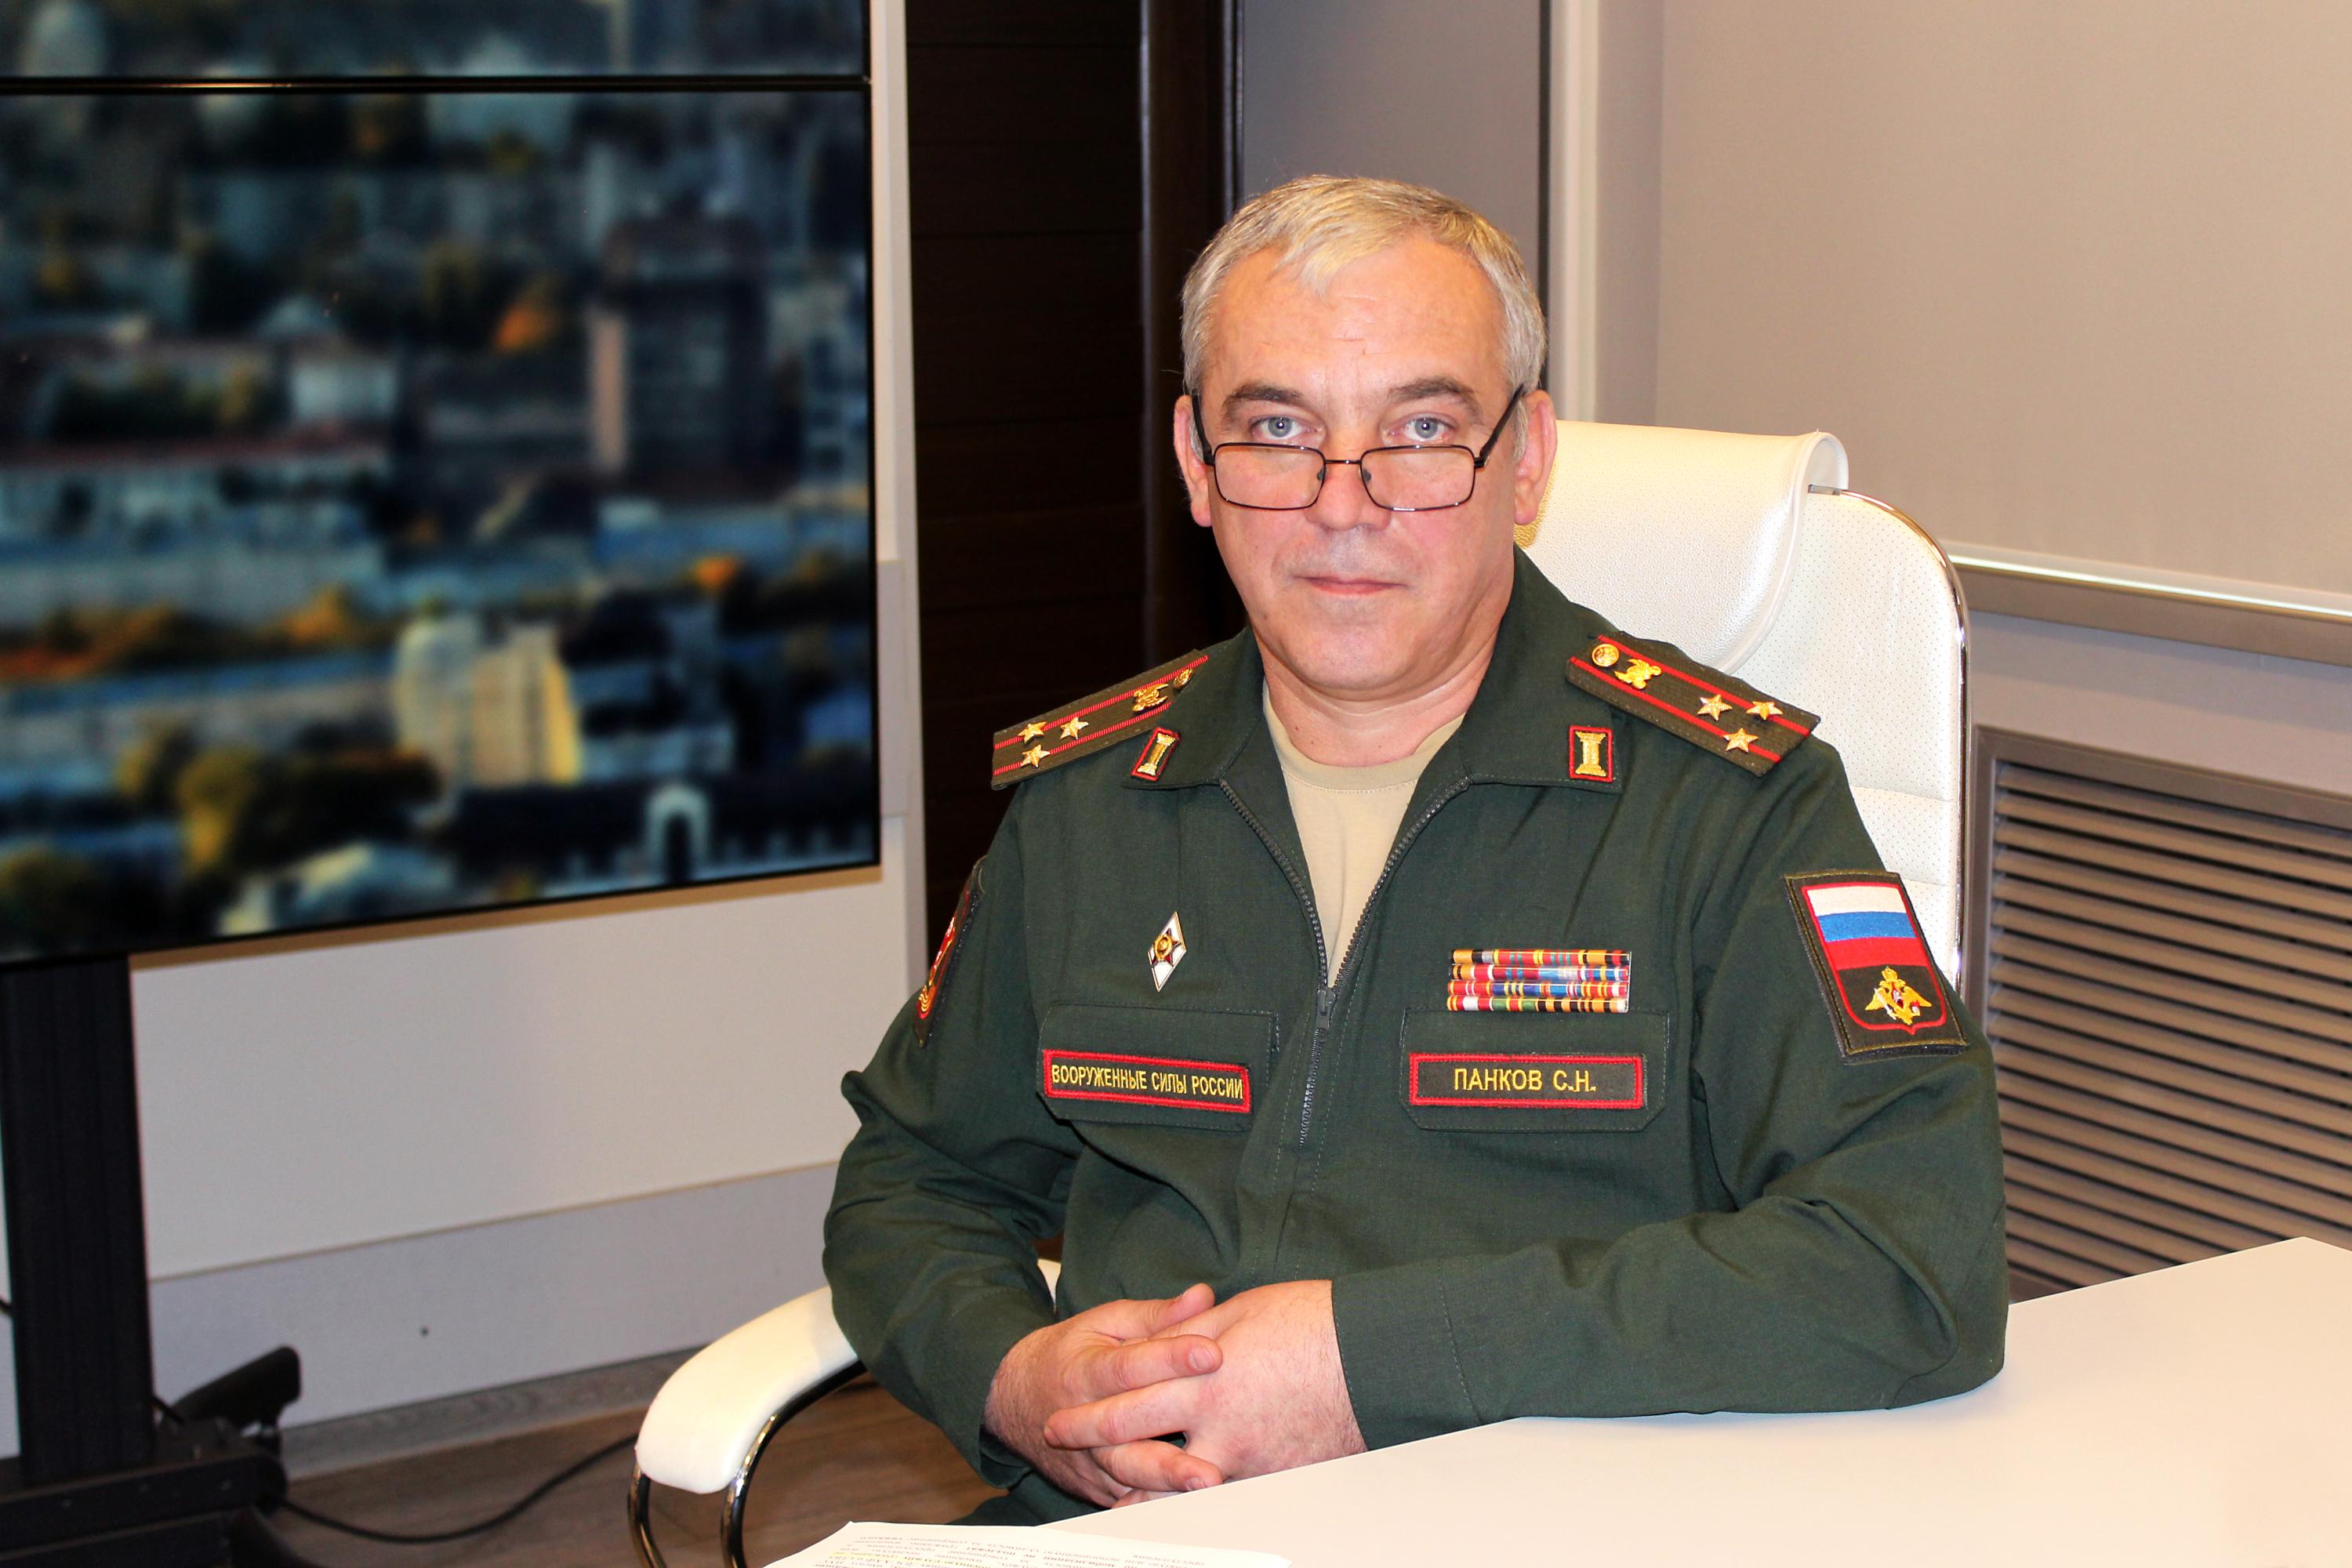 Панков Сергей Николаевич - биография, военный комиссар Воронежской области